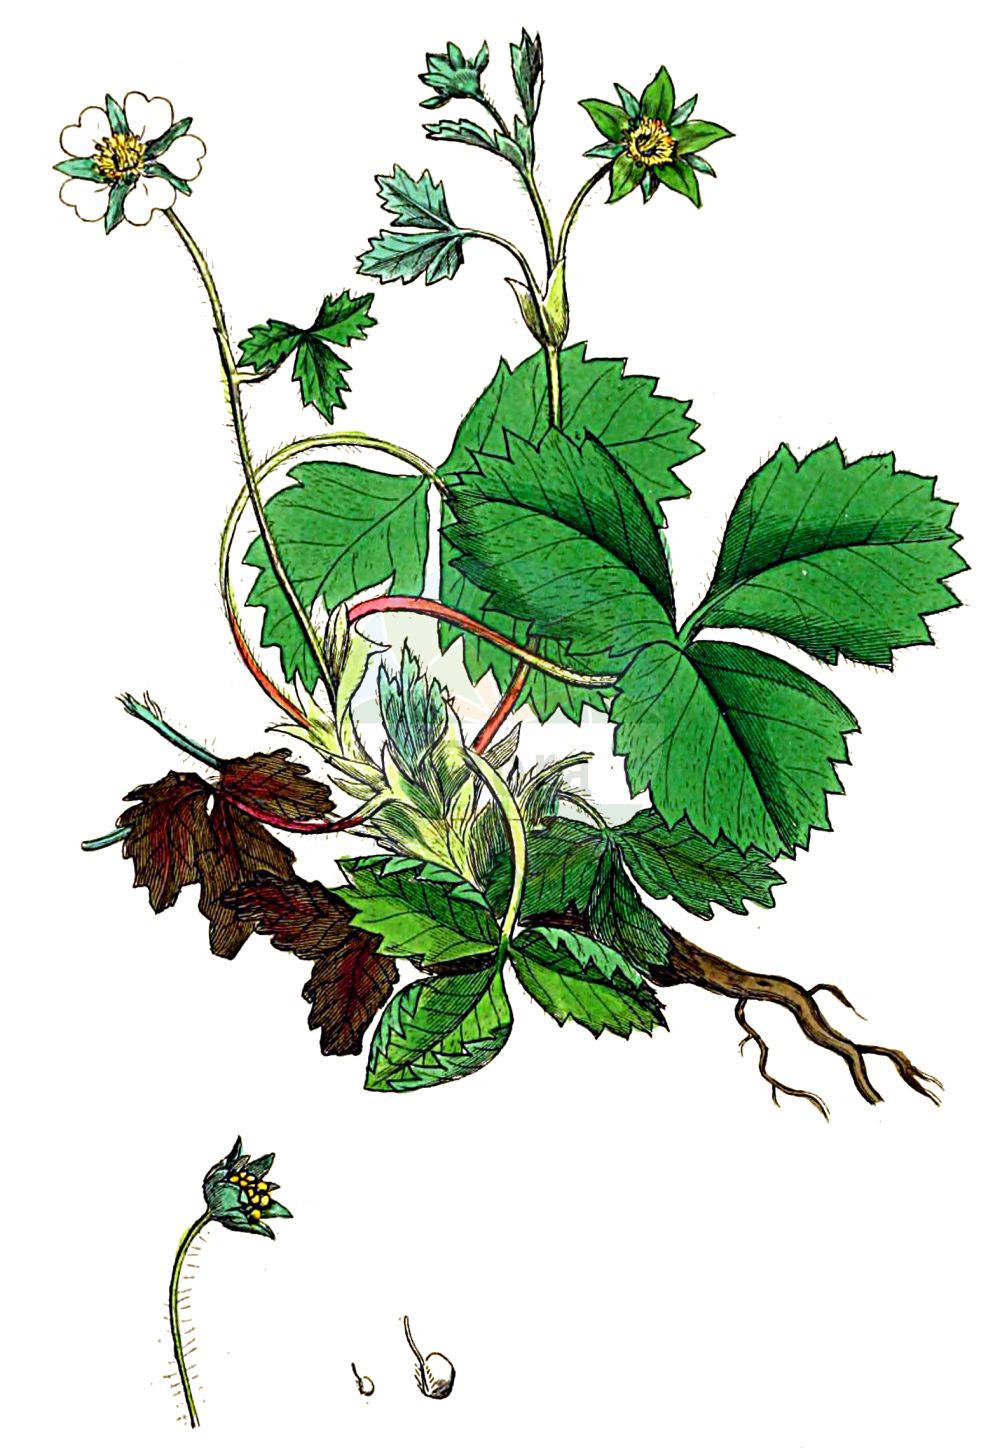 Historische Abbildung von Potentilla sterilis (Erdbeer-Fingerkraut - Barren Strawberry). Das Bild zeigt Blatt, Bluete, Frucht und Same. ---- Historical Drawing of Potentilla sterilis (Erdbeer-Fingerkraut - Barren Strawberry). The image is showing leaf, flower, fruit and seed.(Potentilla sterilis,Erdbeer-Fingerkraut,Barren Strawberry,Comarum fragarioides,Dactylophyllum fragariastrum,Fraga sterilis,Fragaria praecox,Fragaria sicca,Fragaria sterilis,Fragariastrum sterile,Potentilla emarginata,Potentilla fragariastrum,Potentilla fragarioides,Potentilla gunneri,Potentilla prostrata,Potentilla sicca,Potentilla sterilis,Tormentilla fragarioides,Tormentilla obovatifolia,Erdbeer-Fingerkraut,Barren Strawberry,Strawberryleaf Cinquefoil,Potentilla,Fingerkraut,Cinquefoil,Rosaceae,Rosengewächse,Rose family,Blatt,Bluete,Frucht,Same,leaf,flower,fruit,seed,Sowerby (1790-1813))